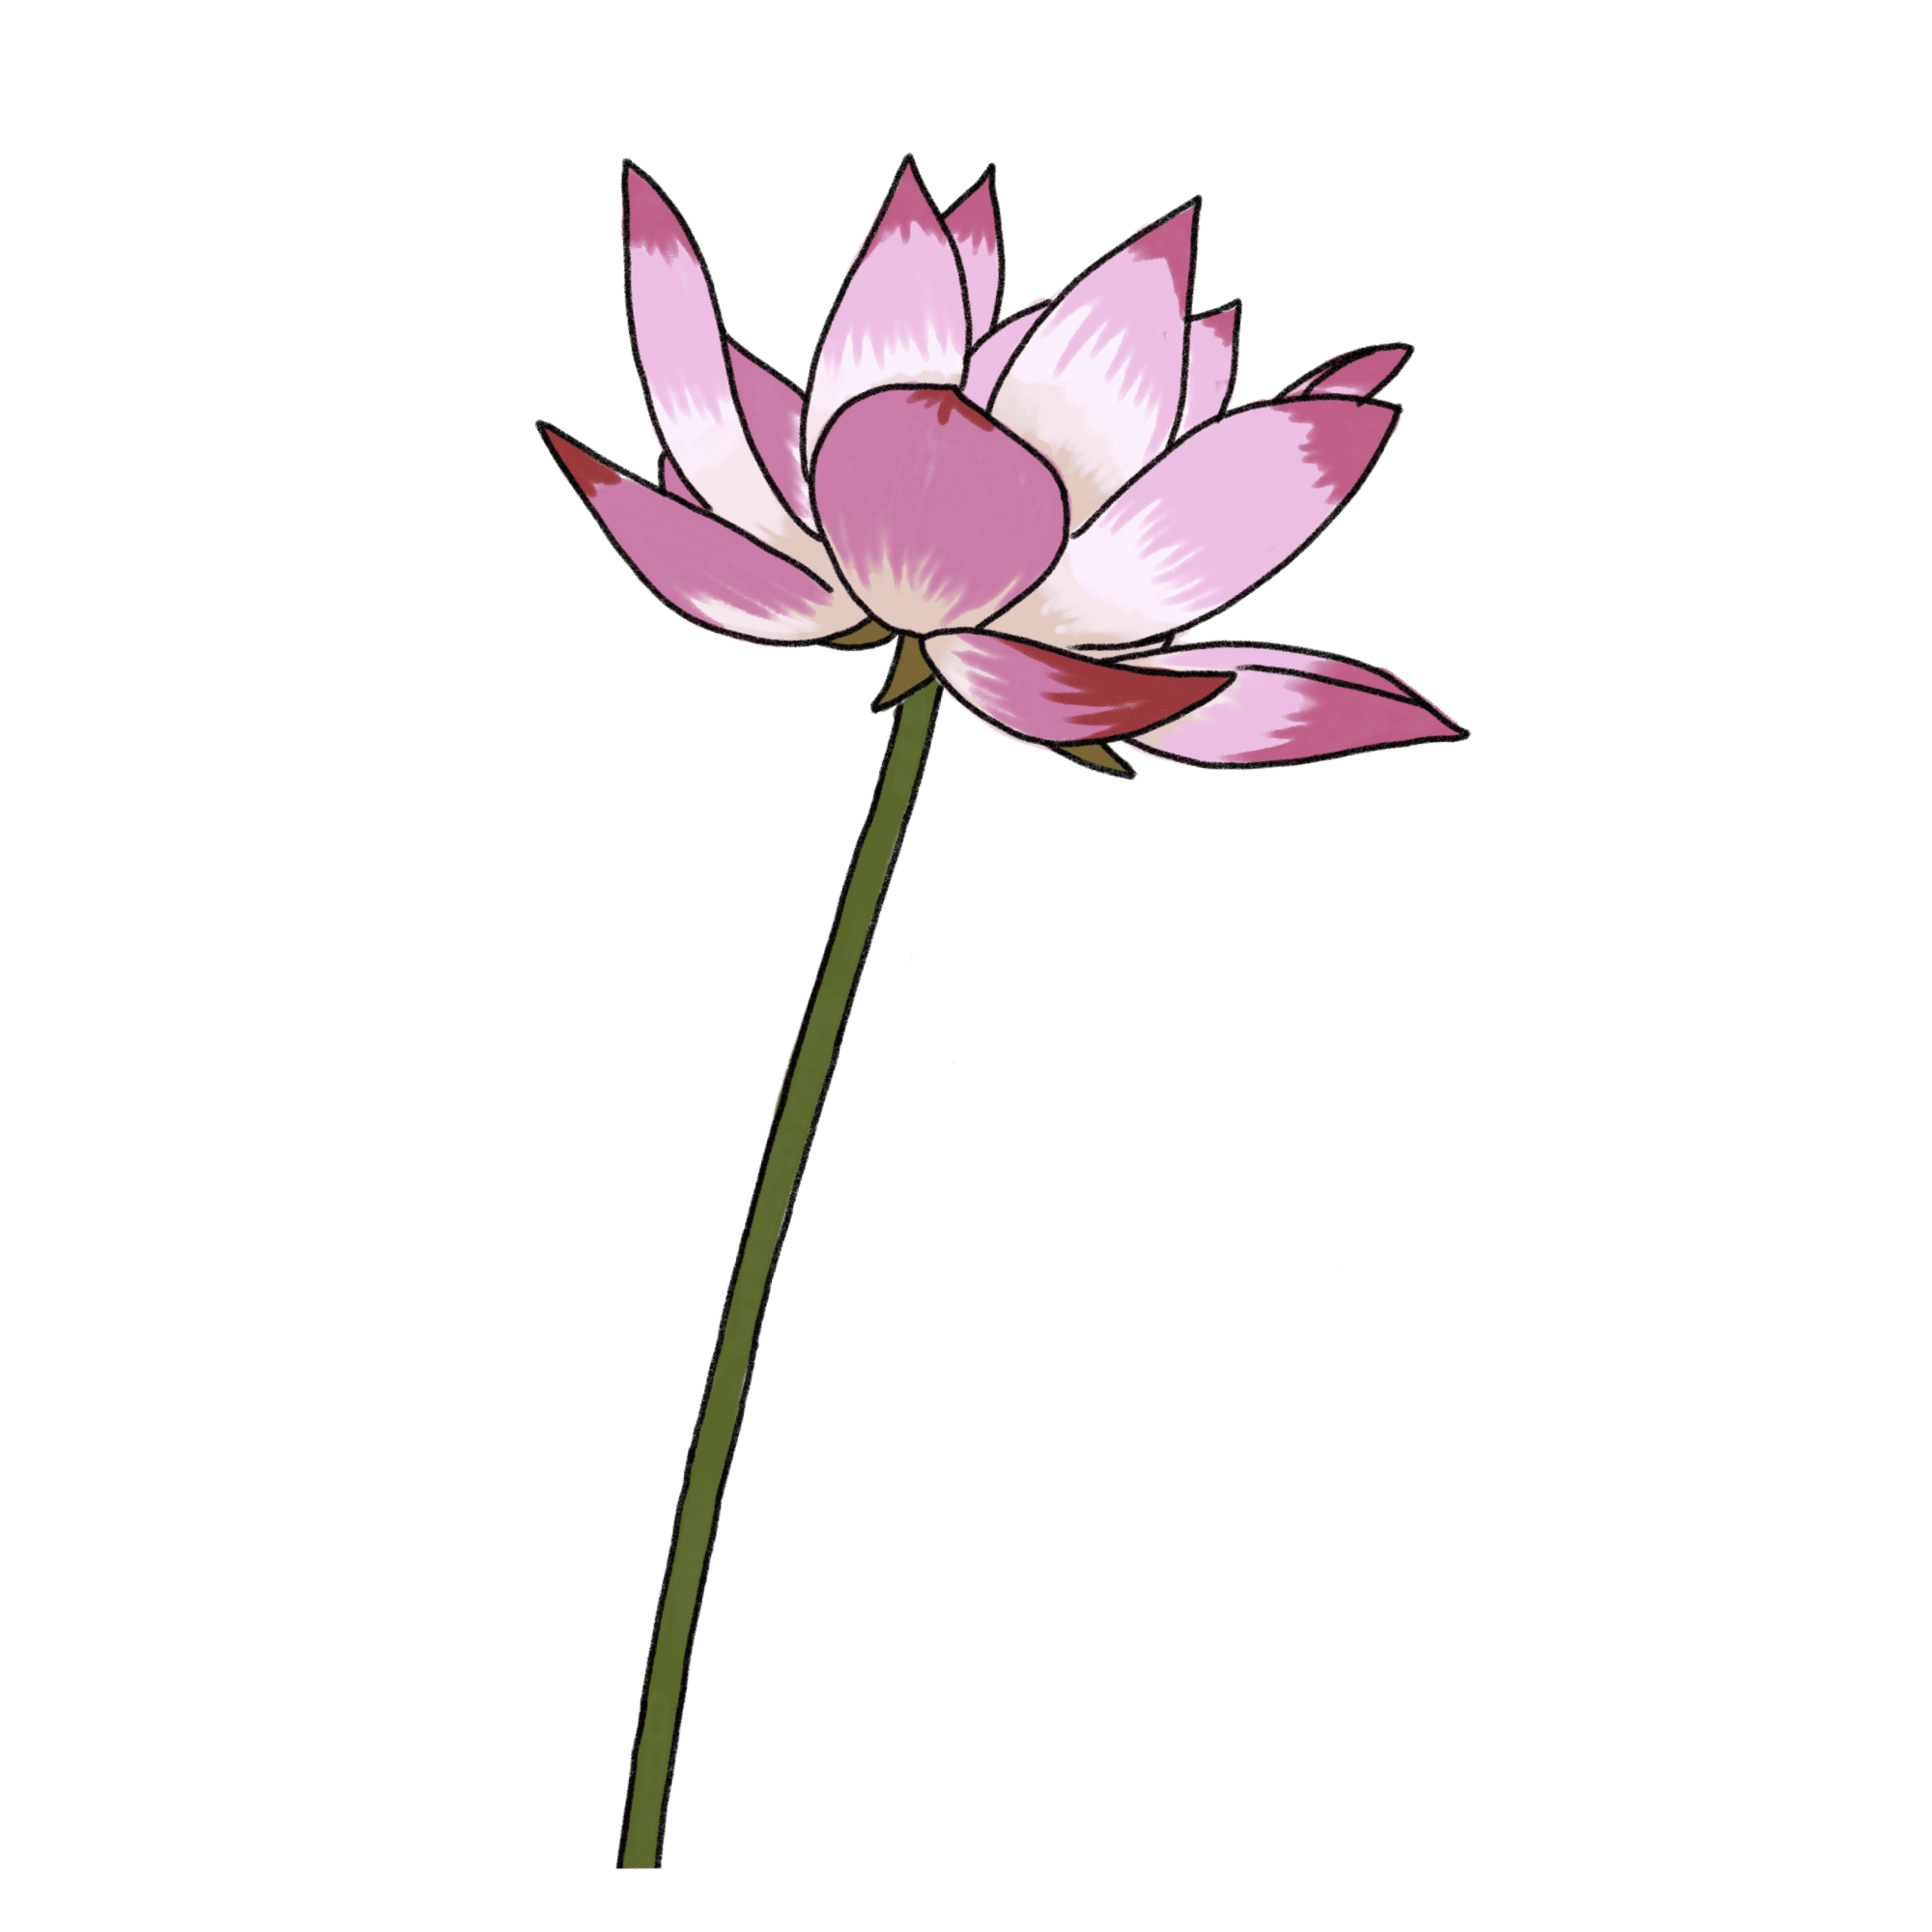 ハスの花のイラスト 02 フリー素材 Greenstock40